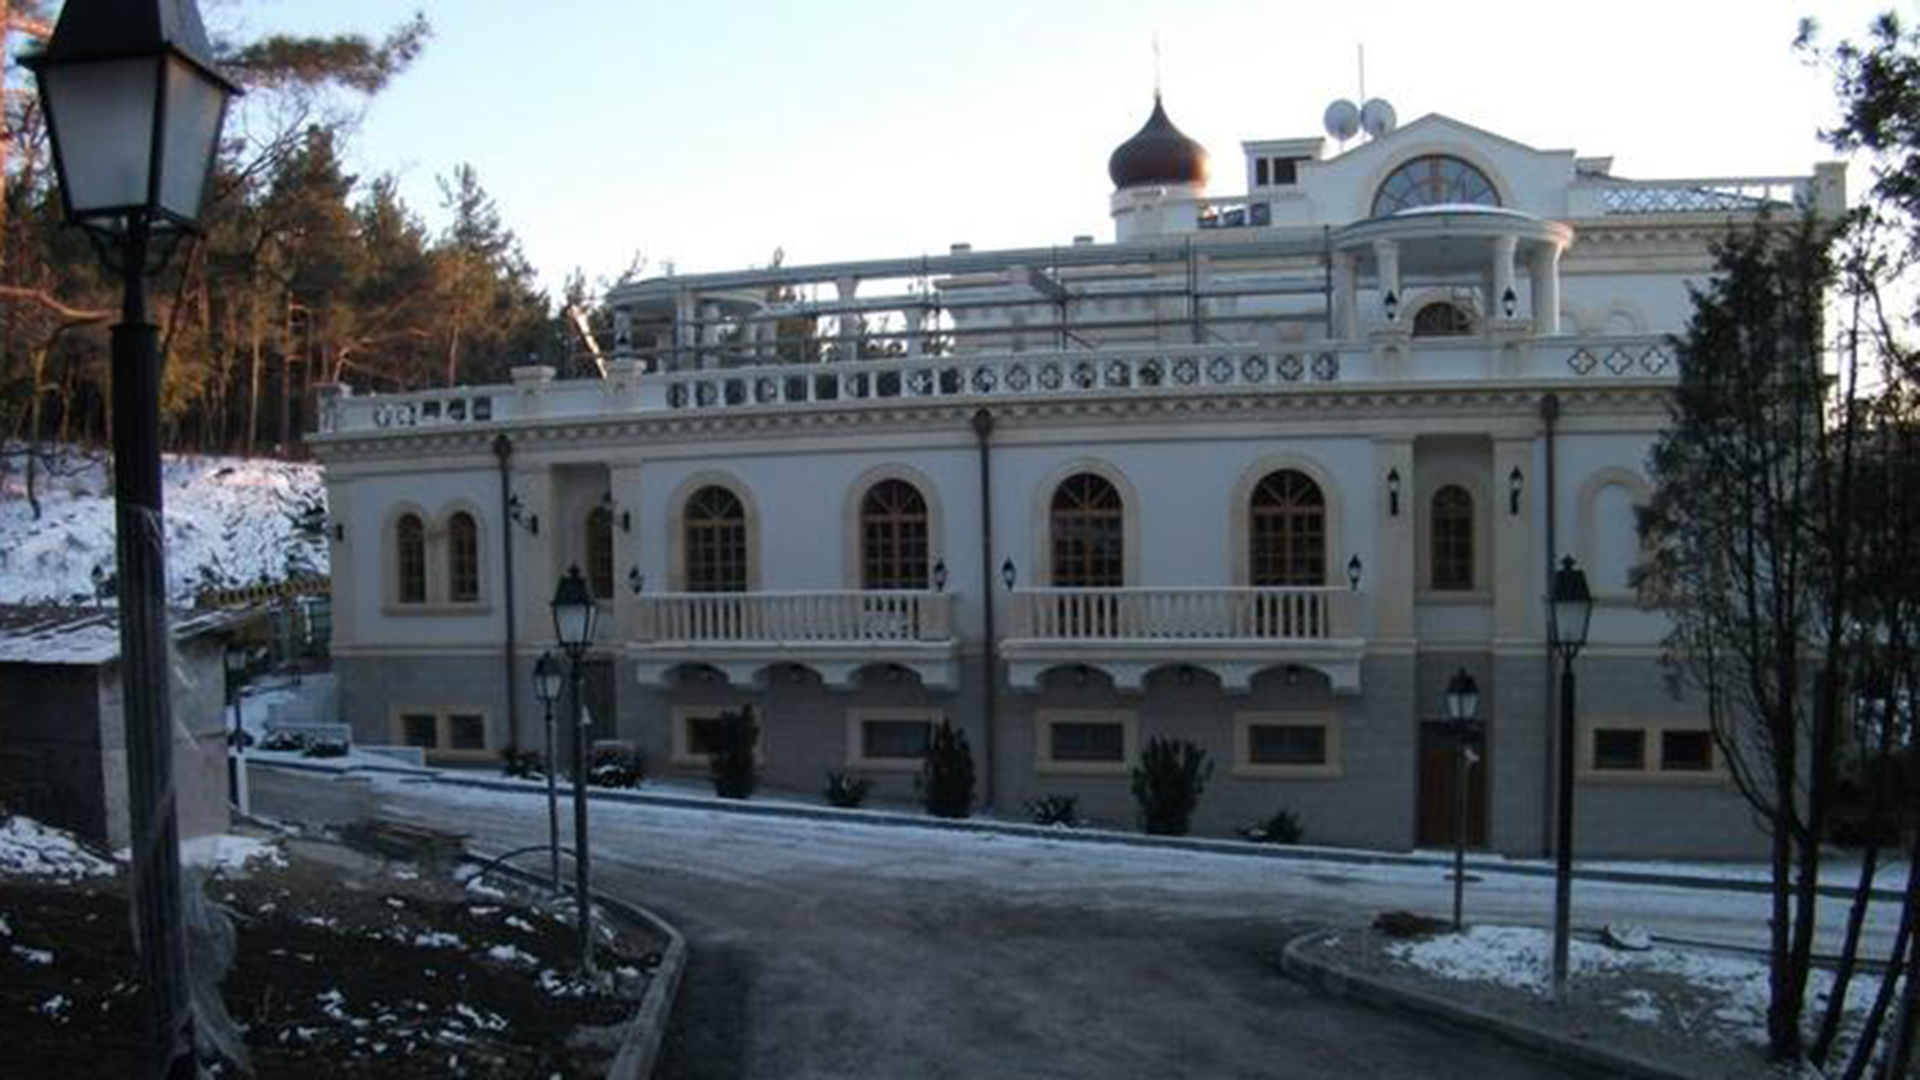 Gelendžhikin palatsi on Moskovan patriarkaatin mukaan kirkollis-hallinnollinen hengellinen keskus, ei Kirillin yksityishuvila.